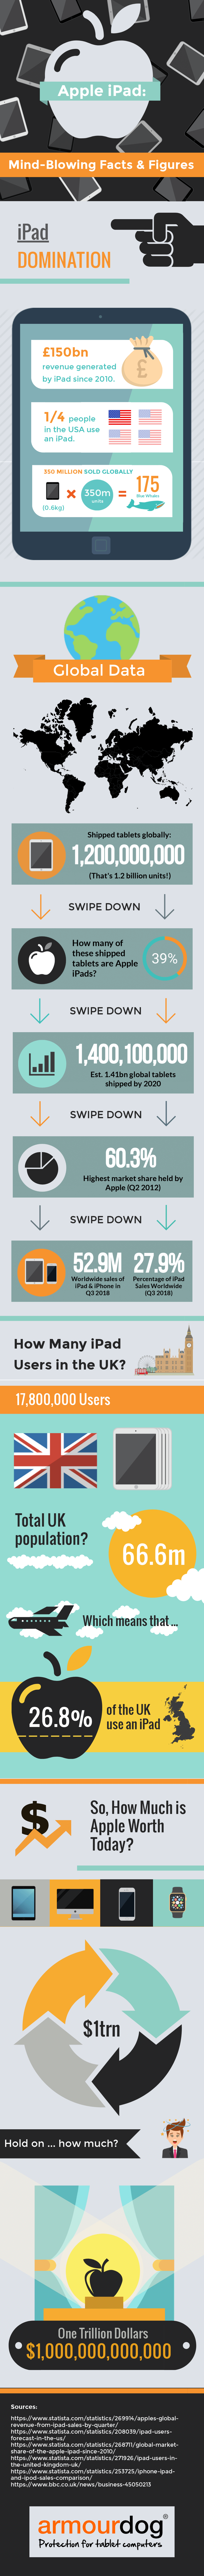 iPad 2018: Mindblowing Facts & Figures